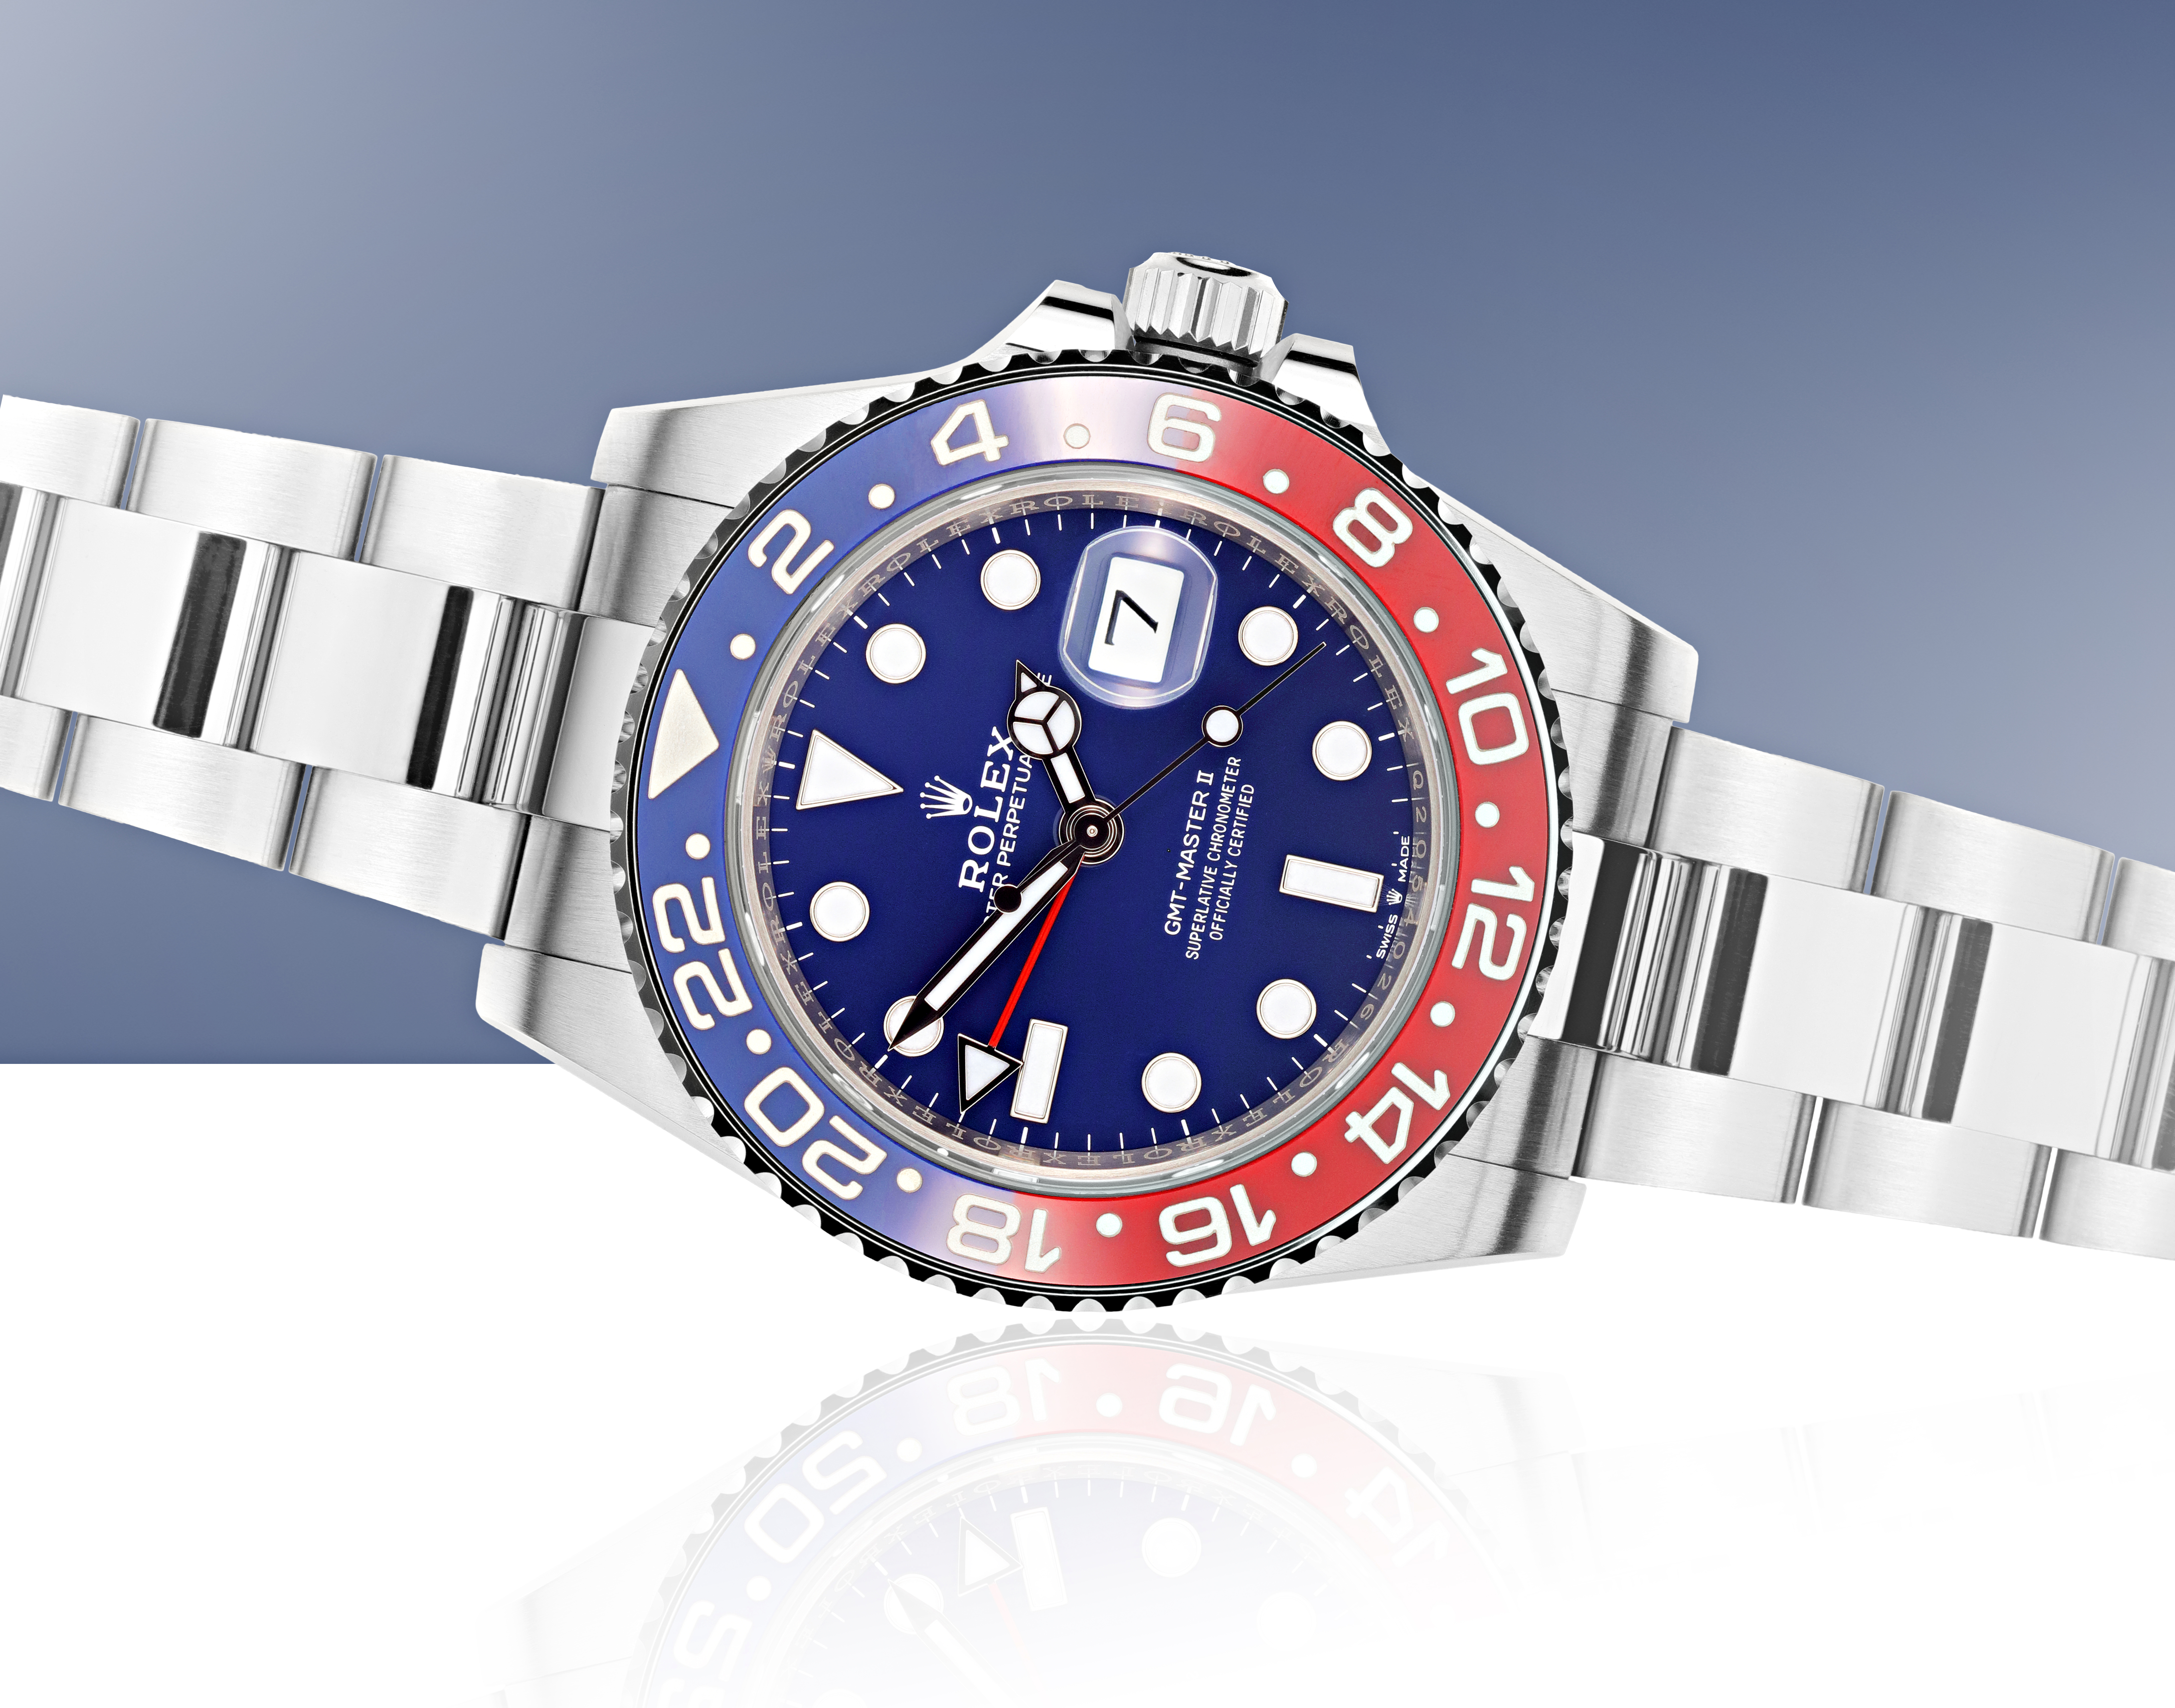 Rolex GMT-Master II watch feature